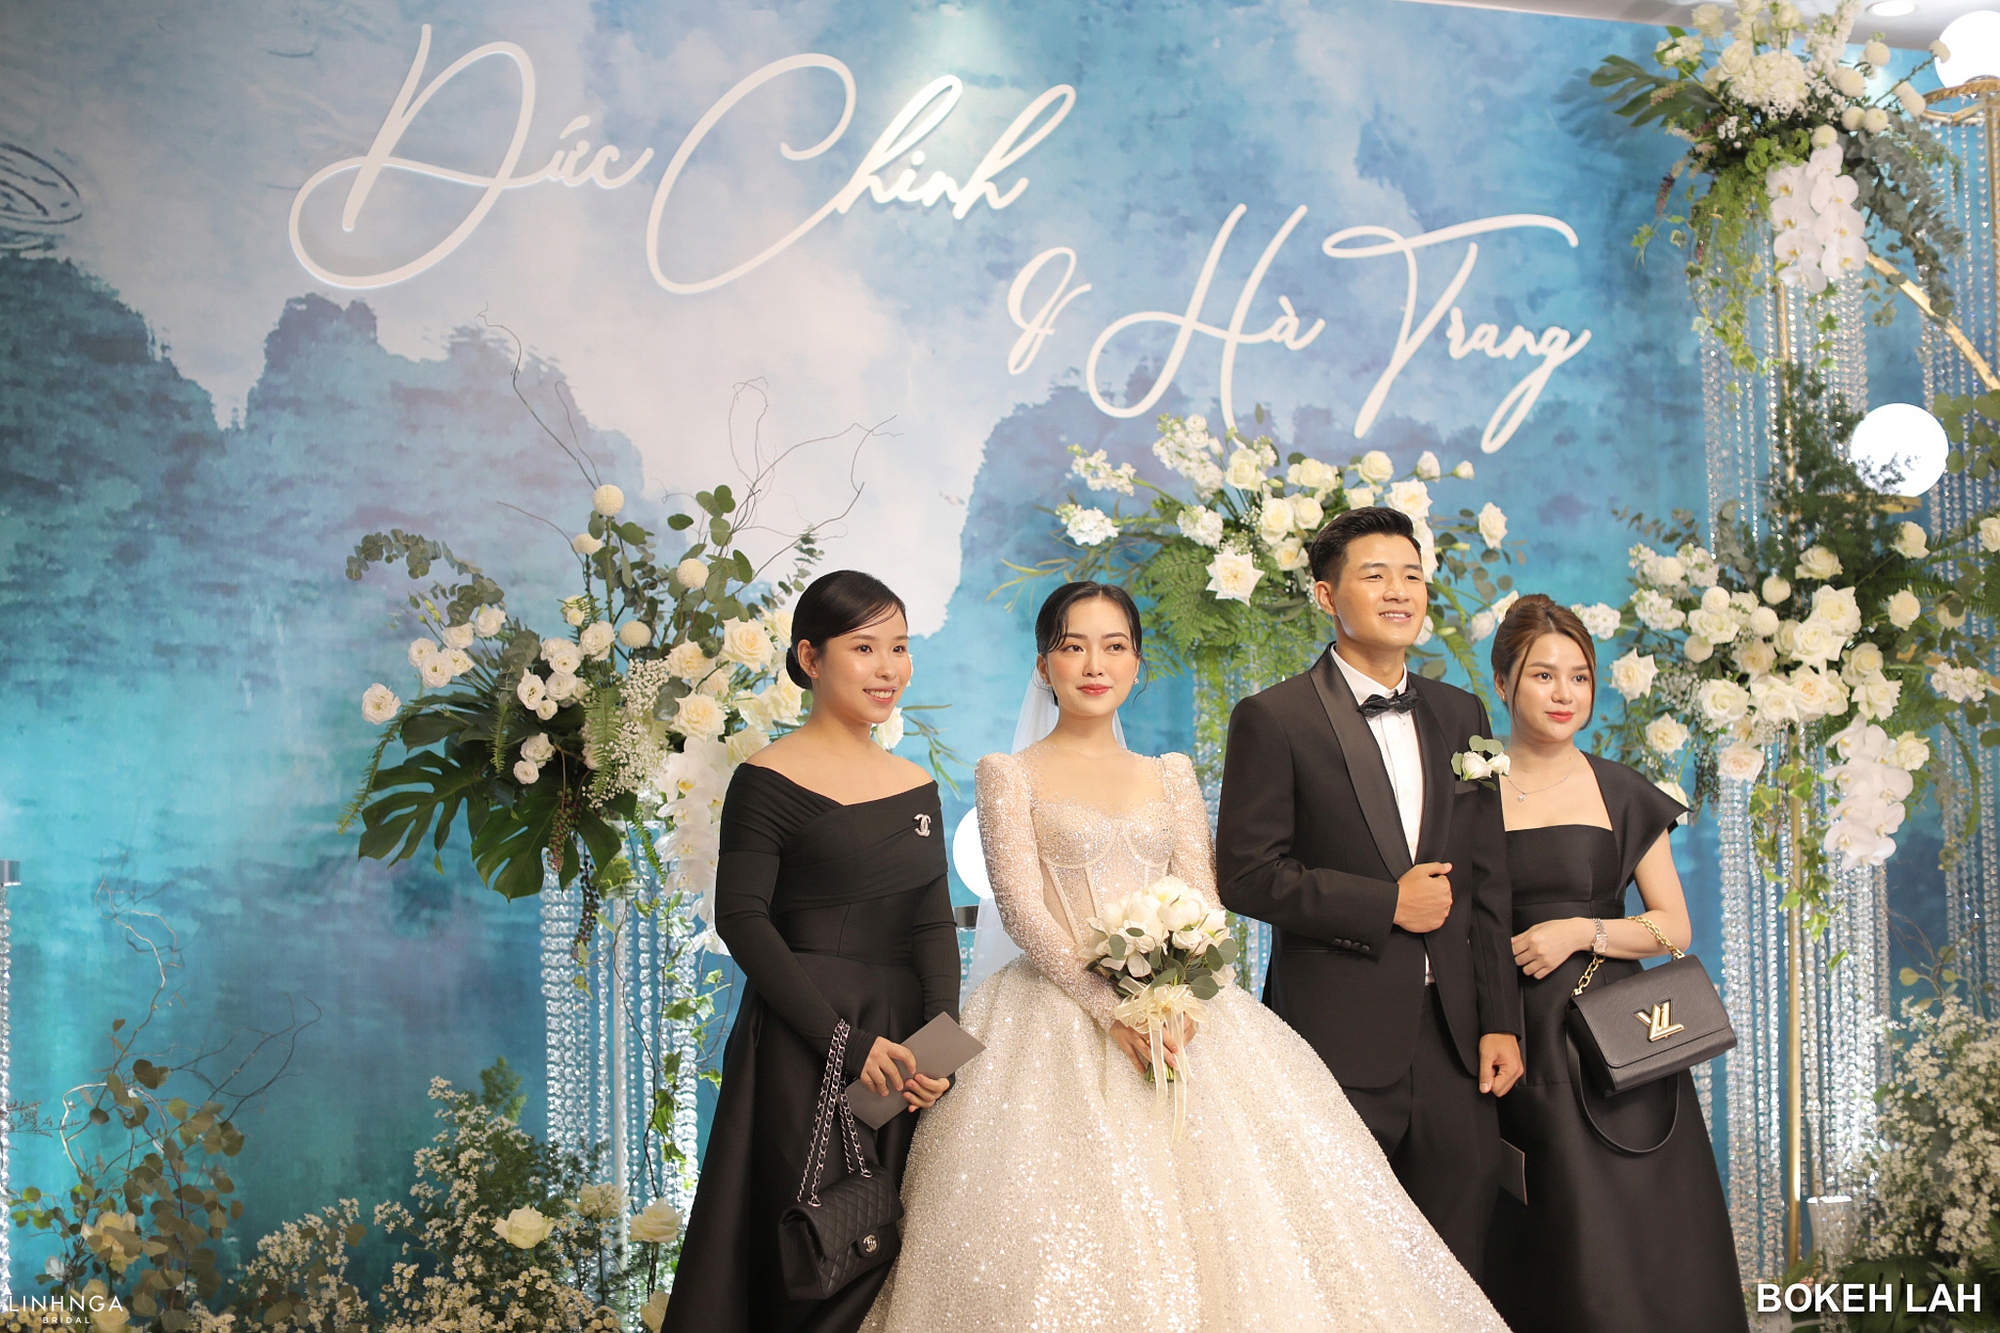 Điểm tên dàn khách mời nổi tiếng dự đám cưới Đức Chinh: Vợ Công Phượng cũng góp mặt - Ảnh 7.